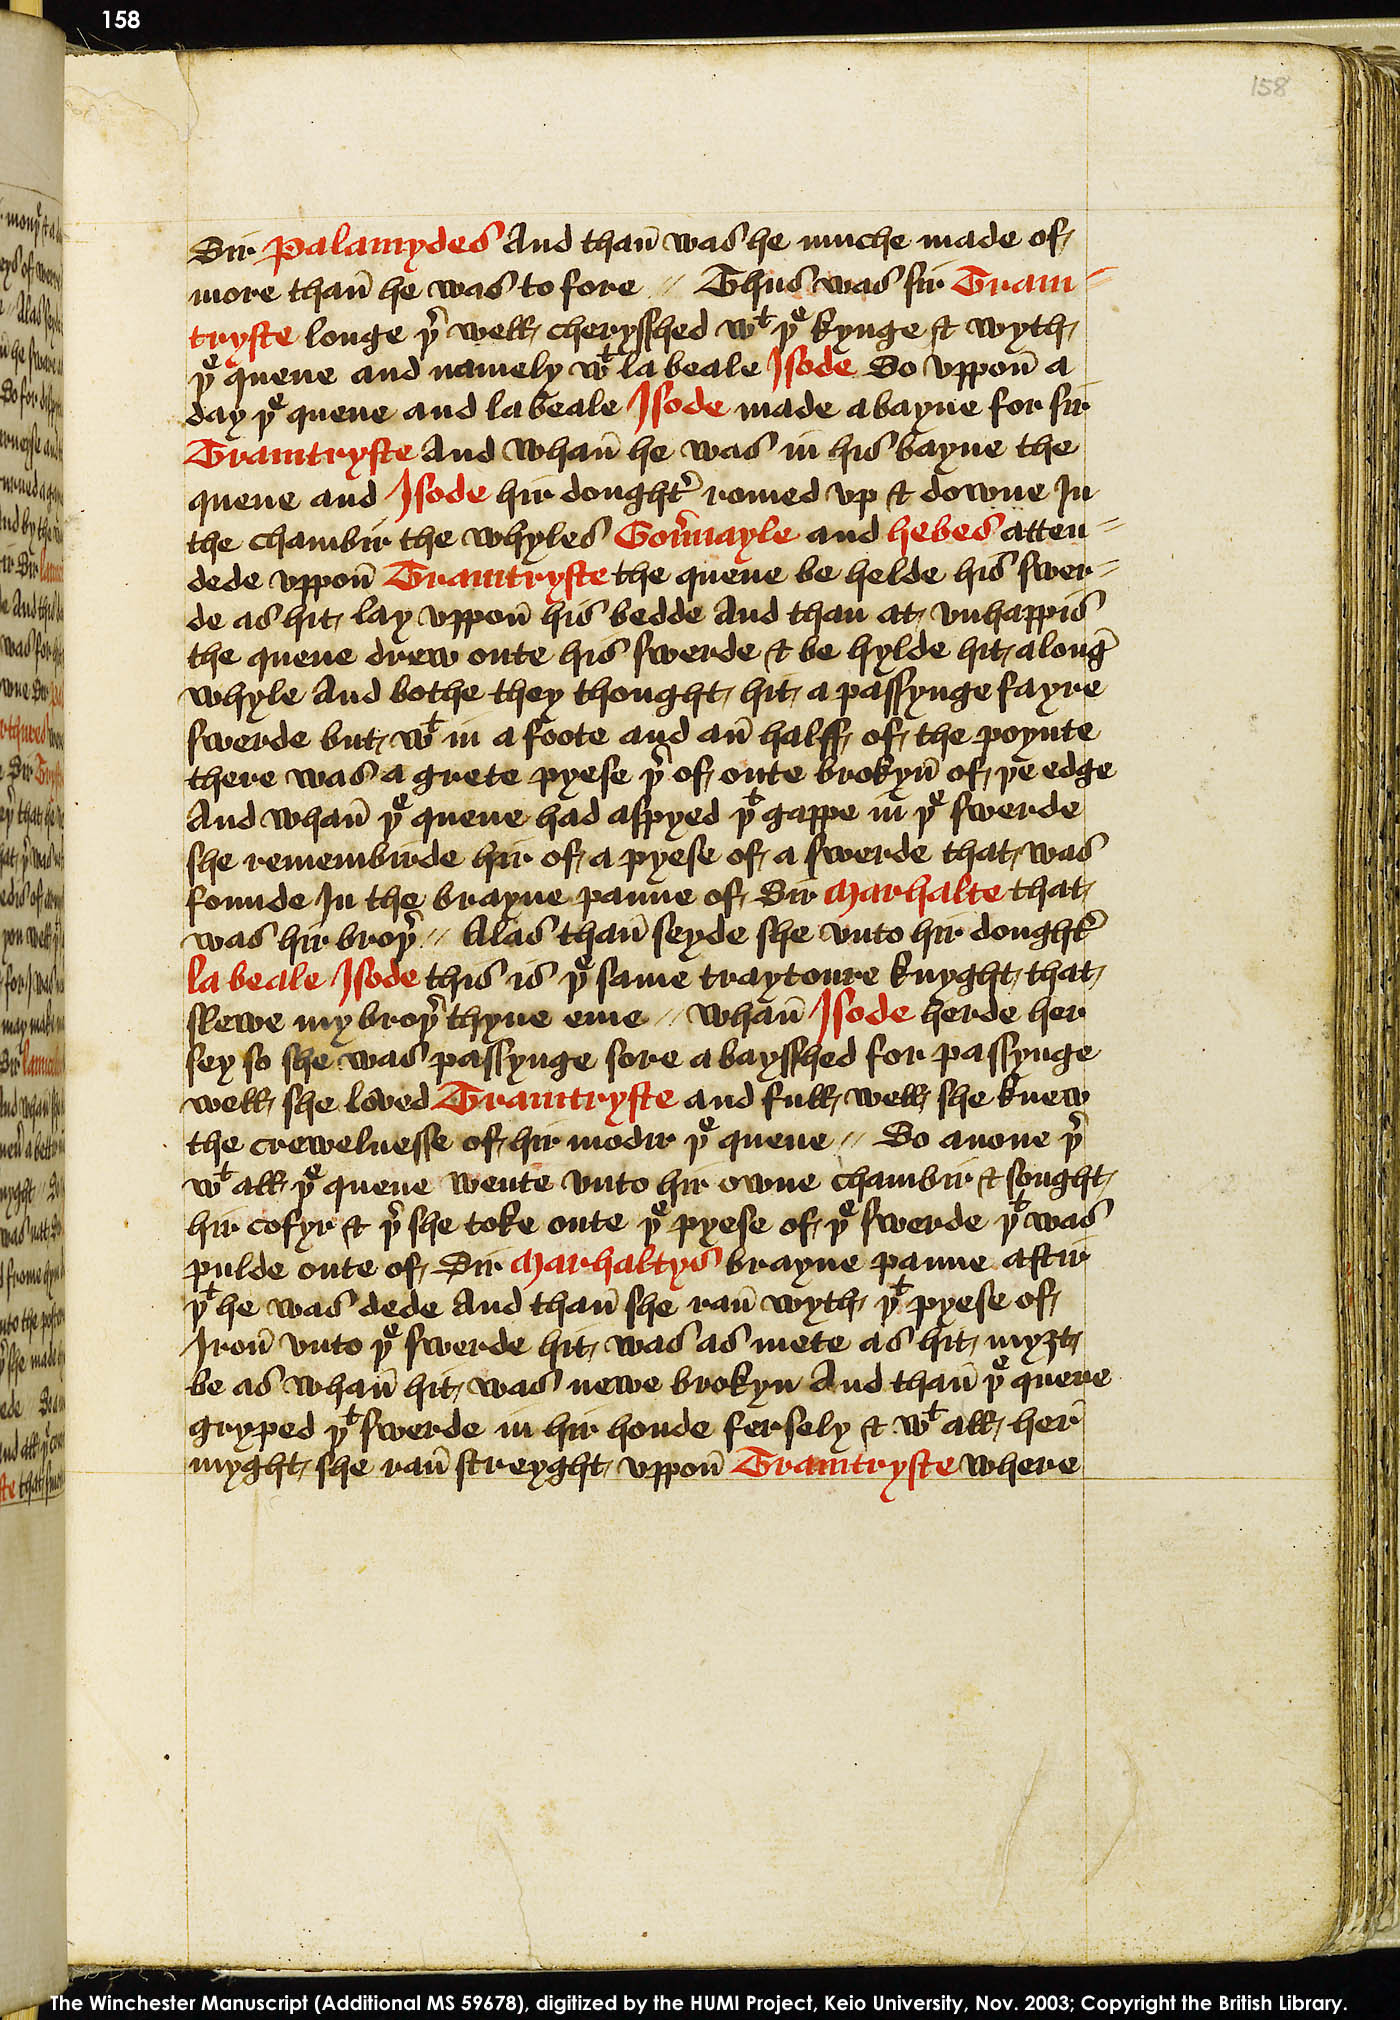 Folio 158r